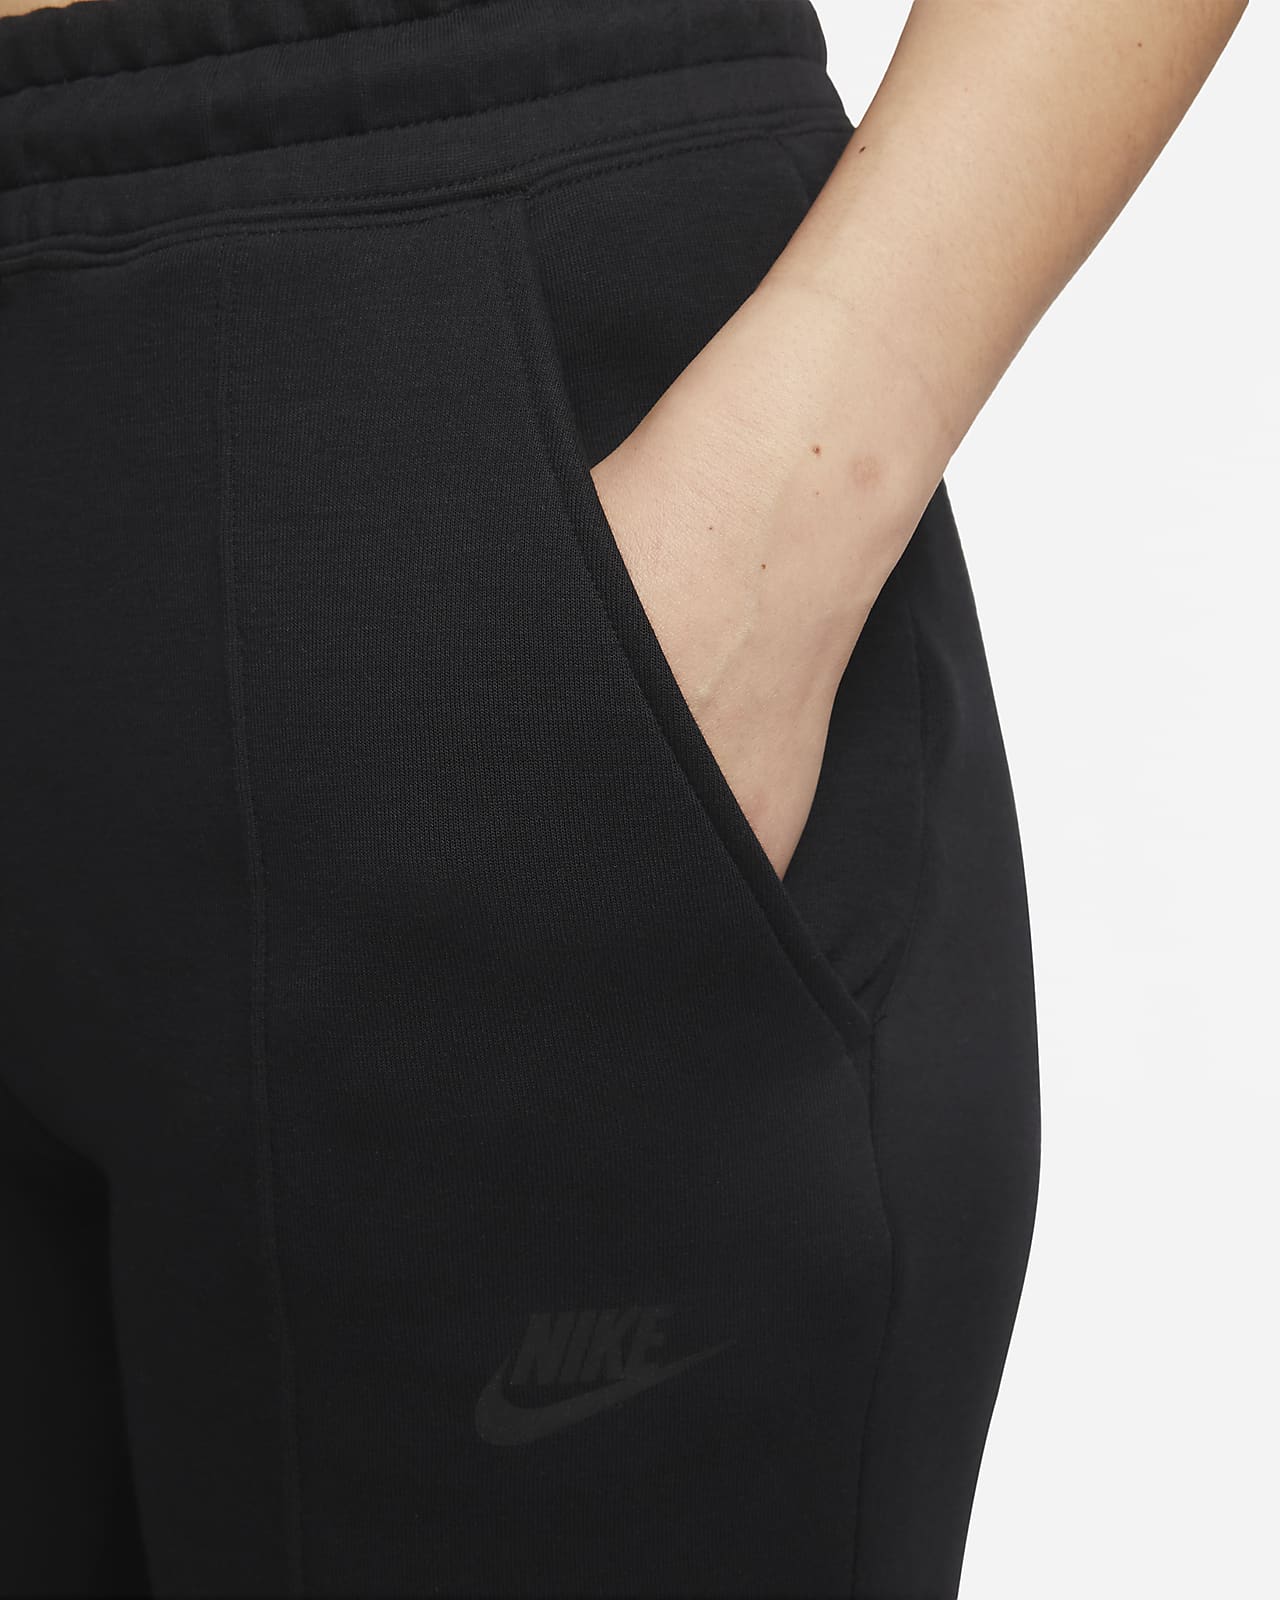 Nike Sportswear Tech Fleece Women's Mid-Rise Joggers.